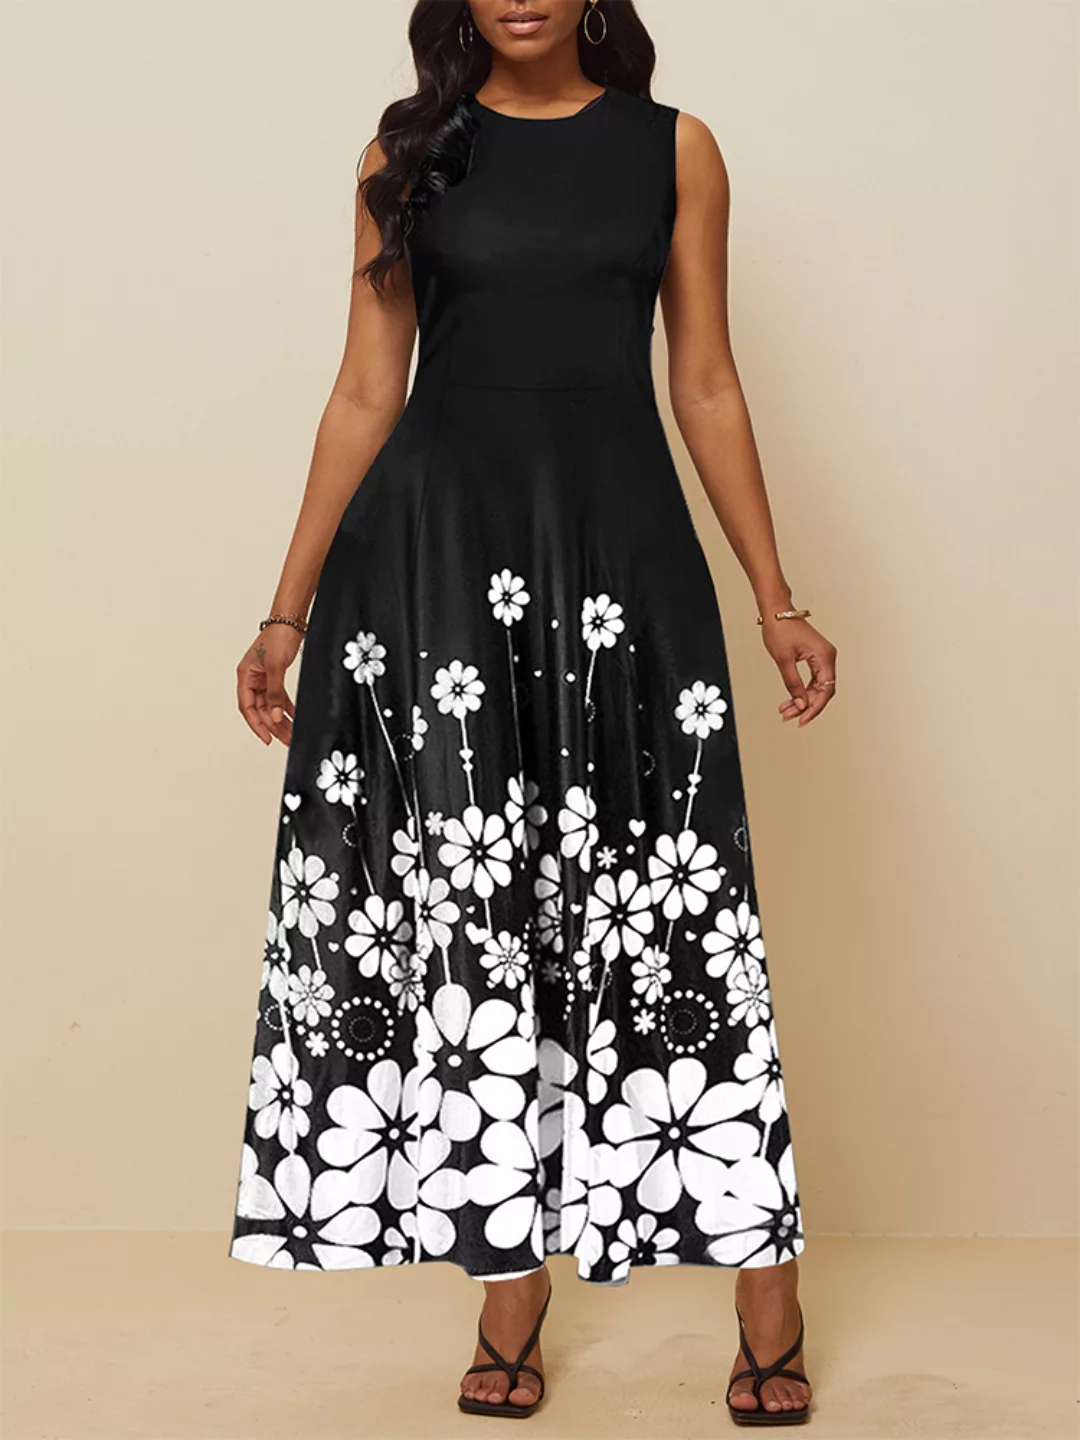 Ärmelloser Big Swing mit Blumendruck Kleid Damen Party Kleid günstig online kaufen